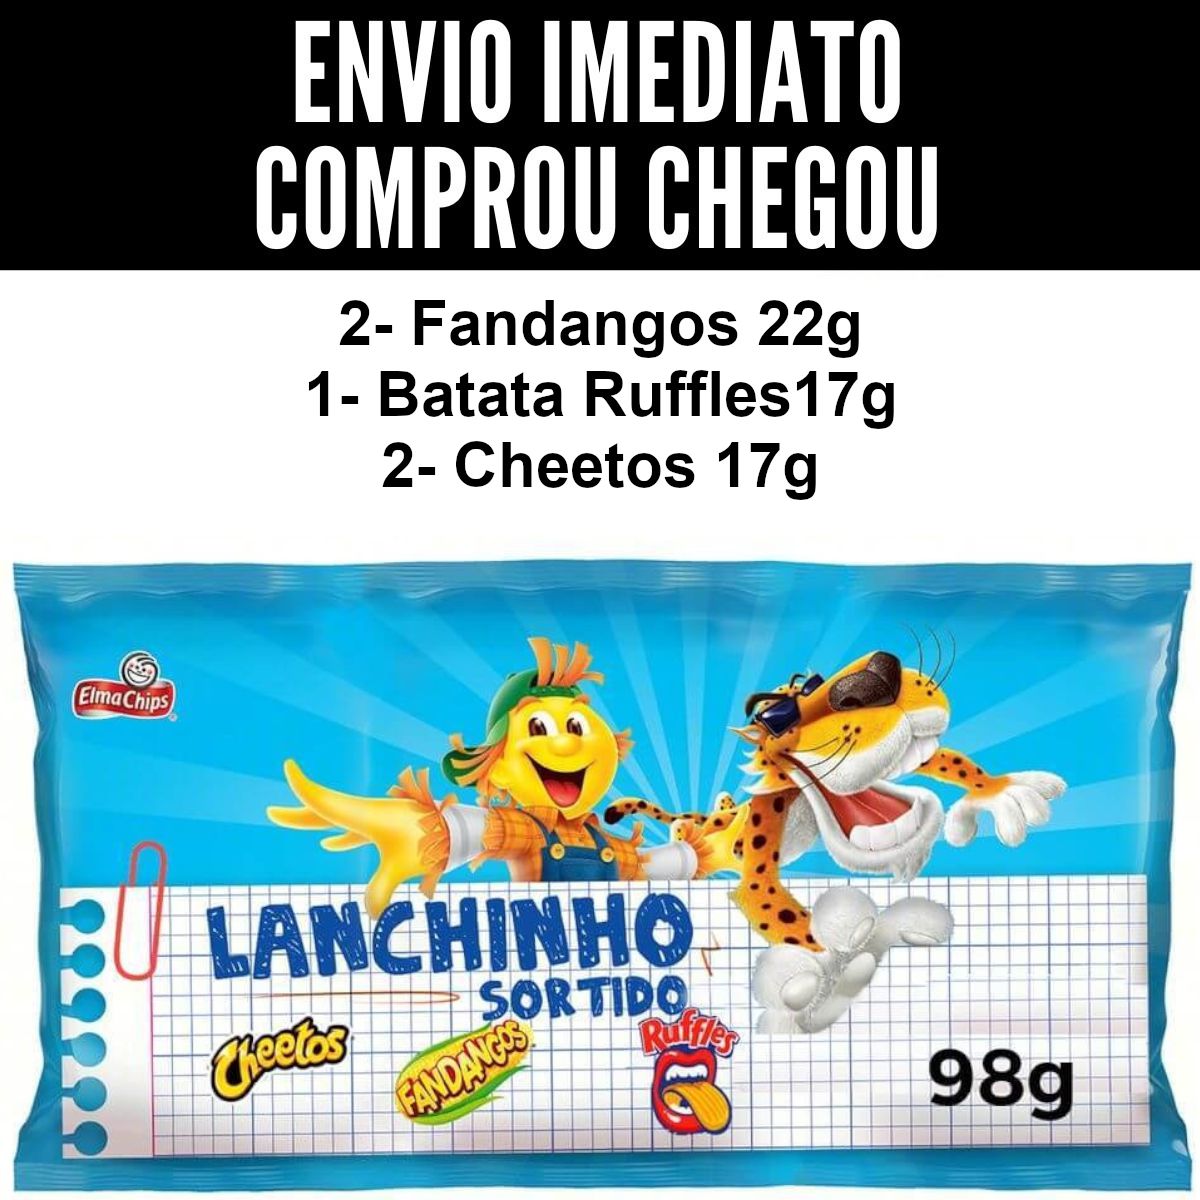 Cheetos Patrulha Canina Azul